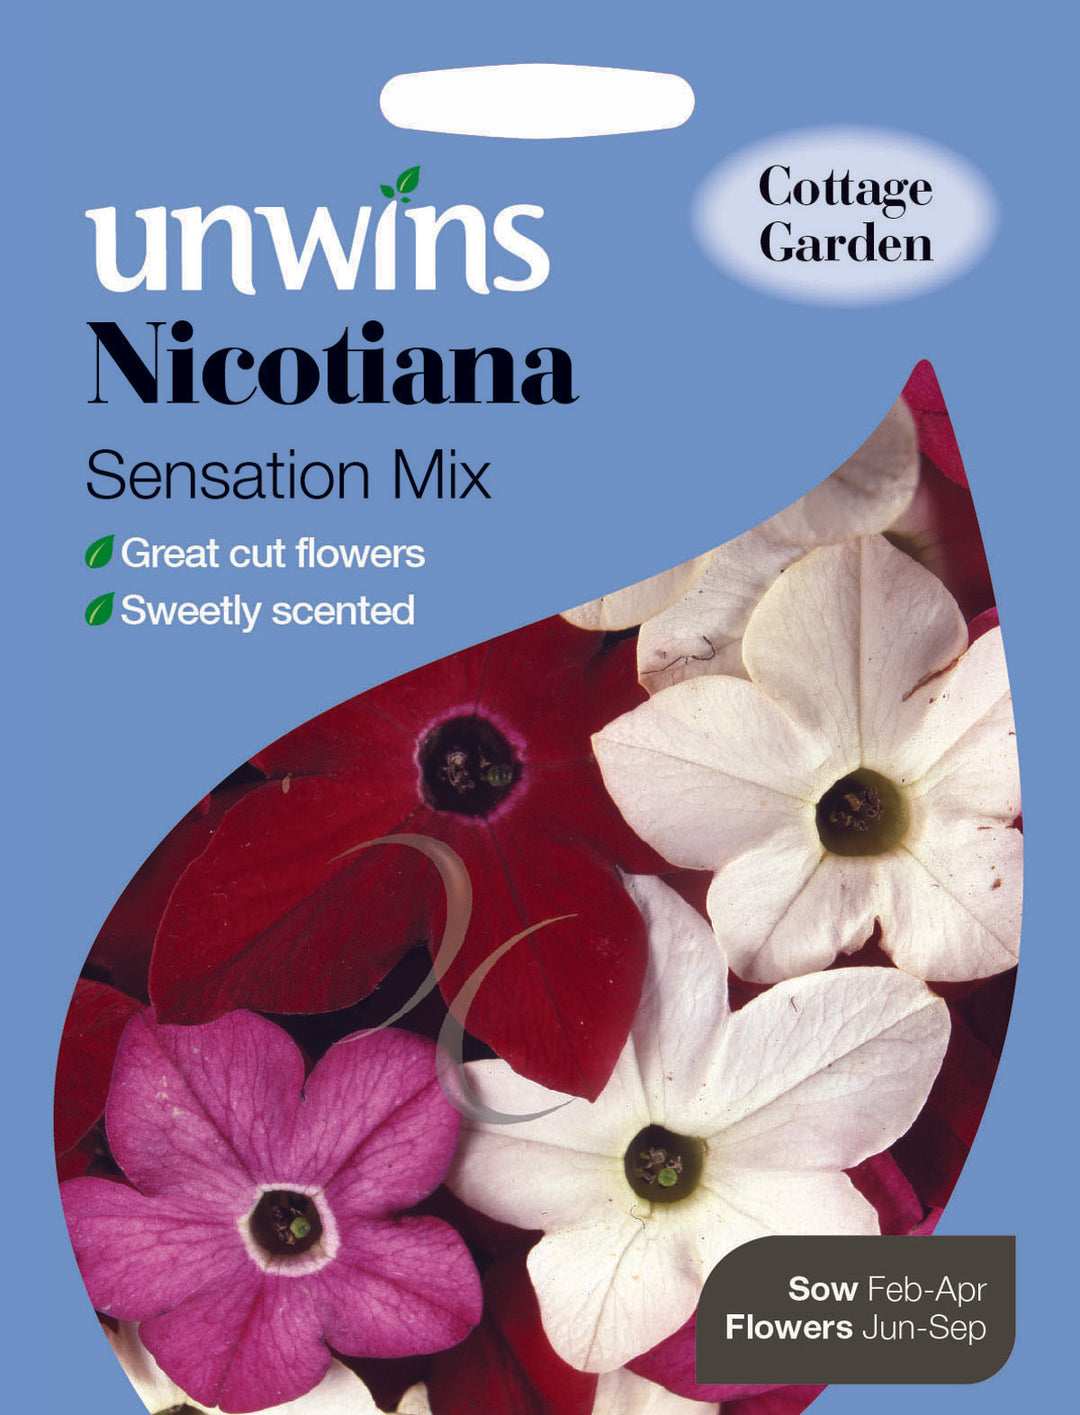 Nicotiana Sensation Mix